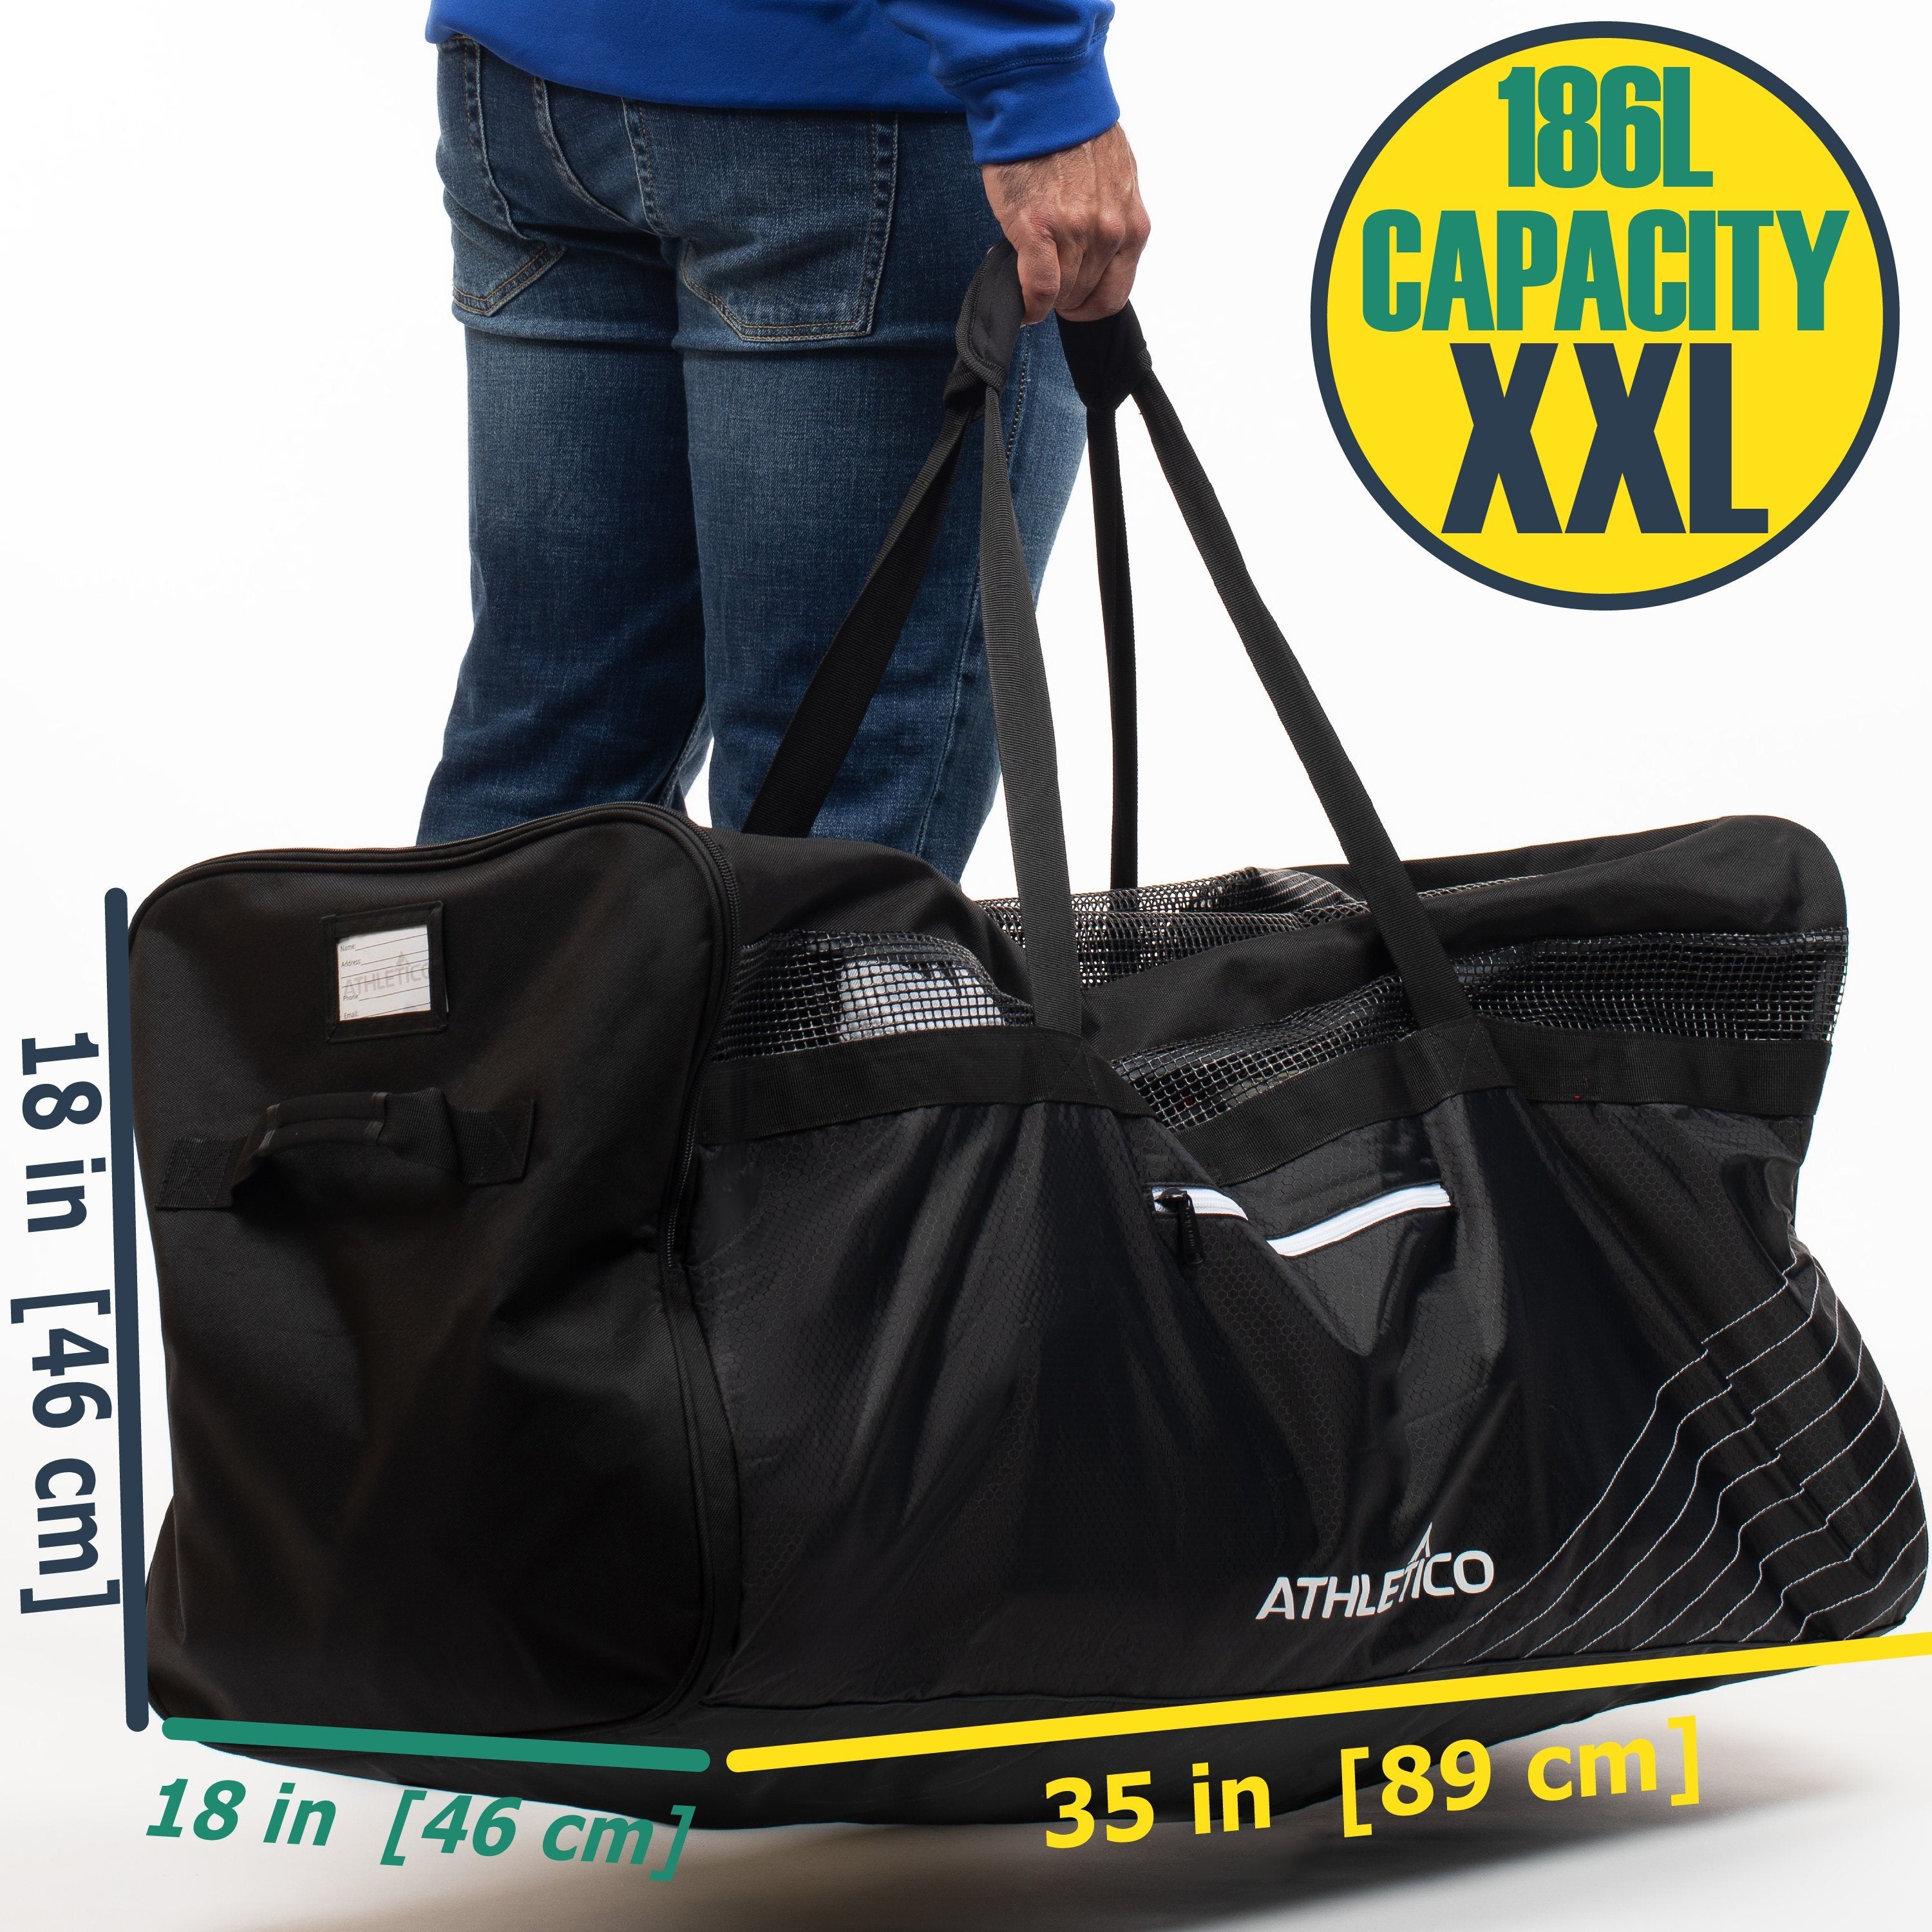 Athletico Hockey Duffle Bag - 35 Large Ice Hockey Duffel XXL Travel Bag for Equipment & Gear, with Included Organizer Caddy (Back)